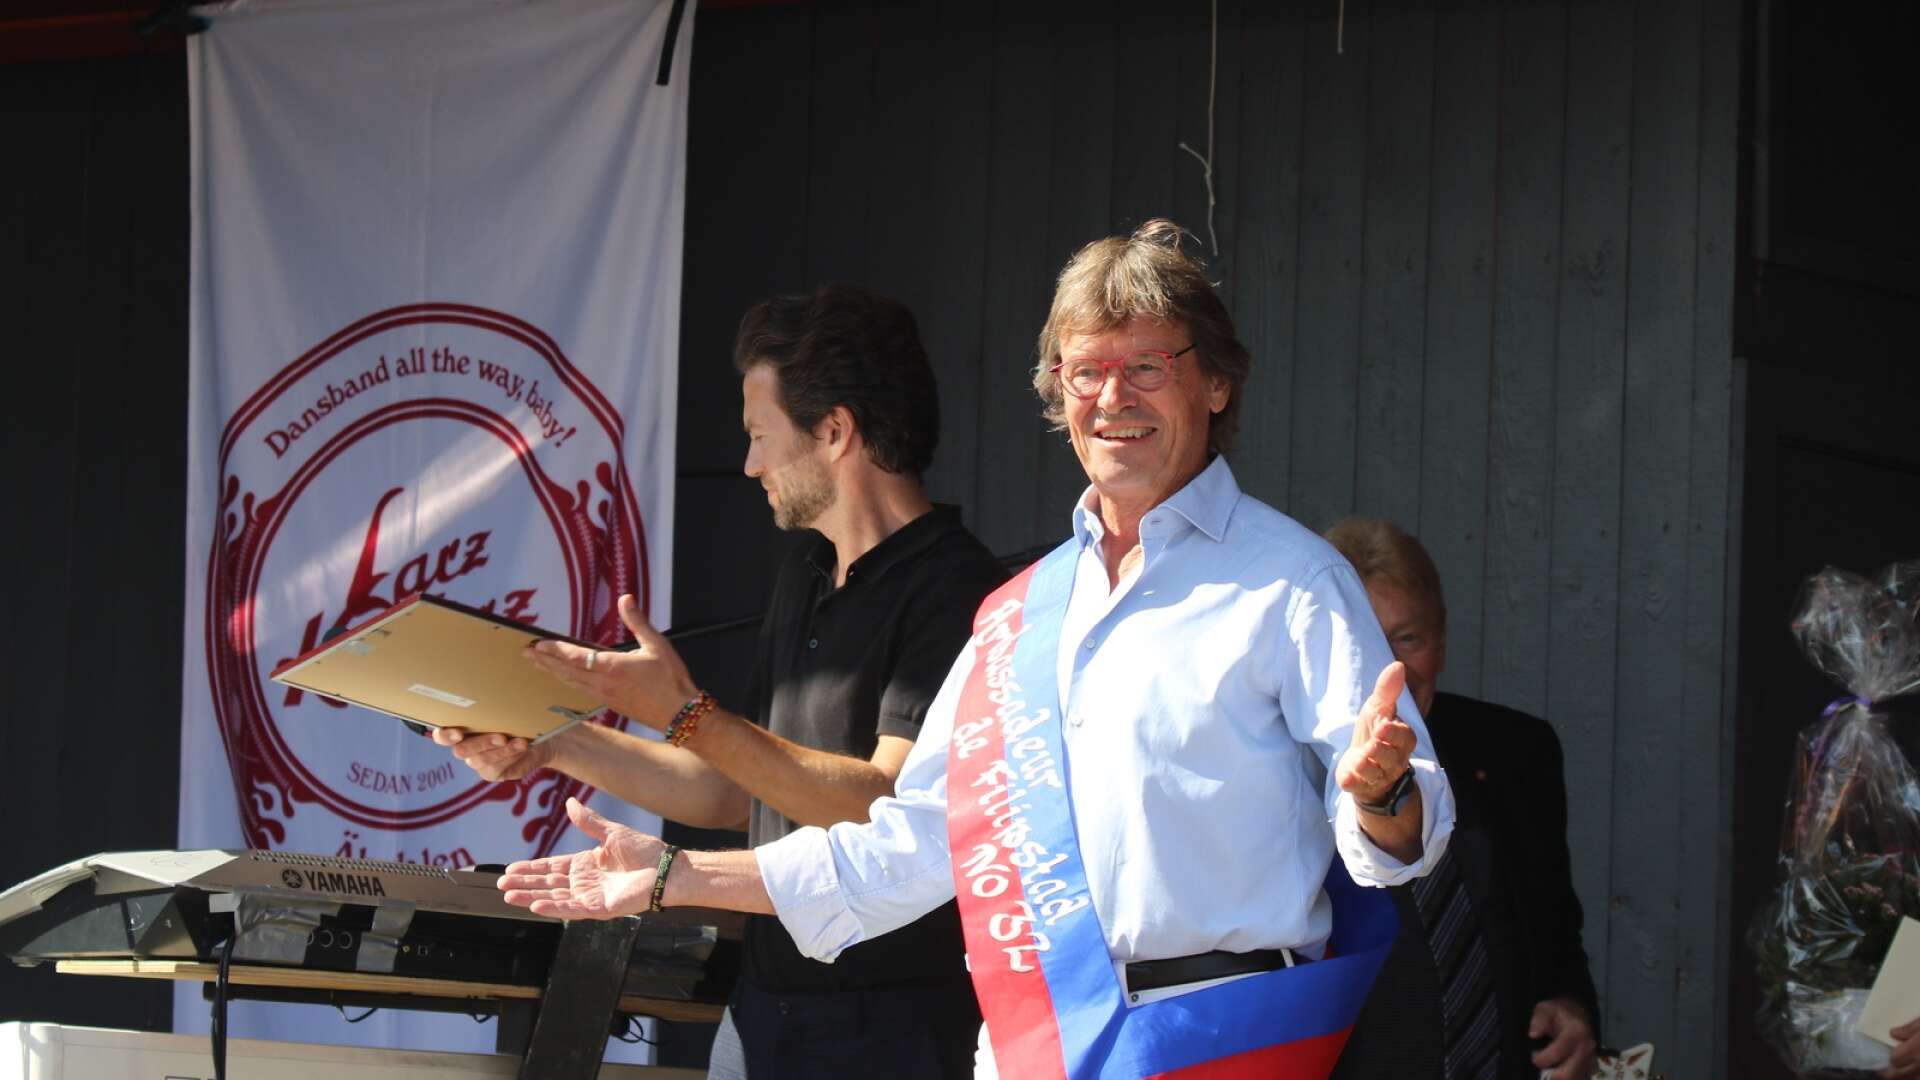 Klasse Möllberg blev Filipstads nye ambassadör, den 32 i ordningen.